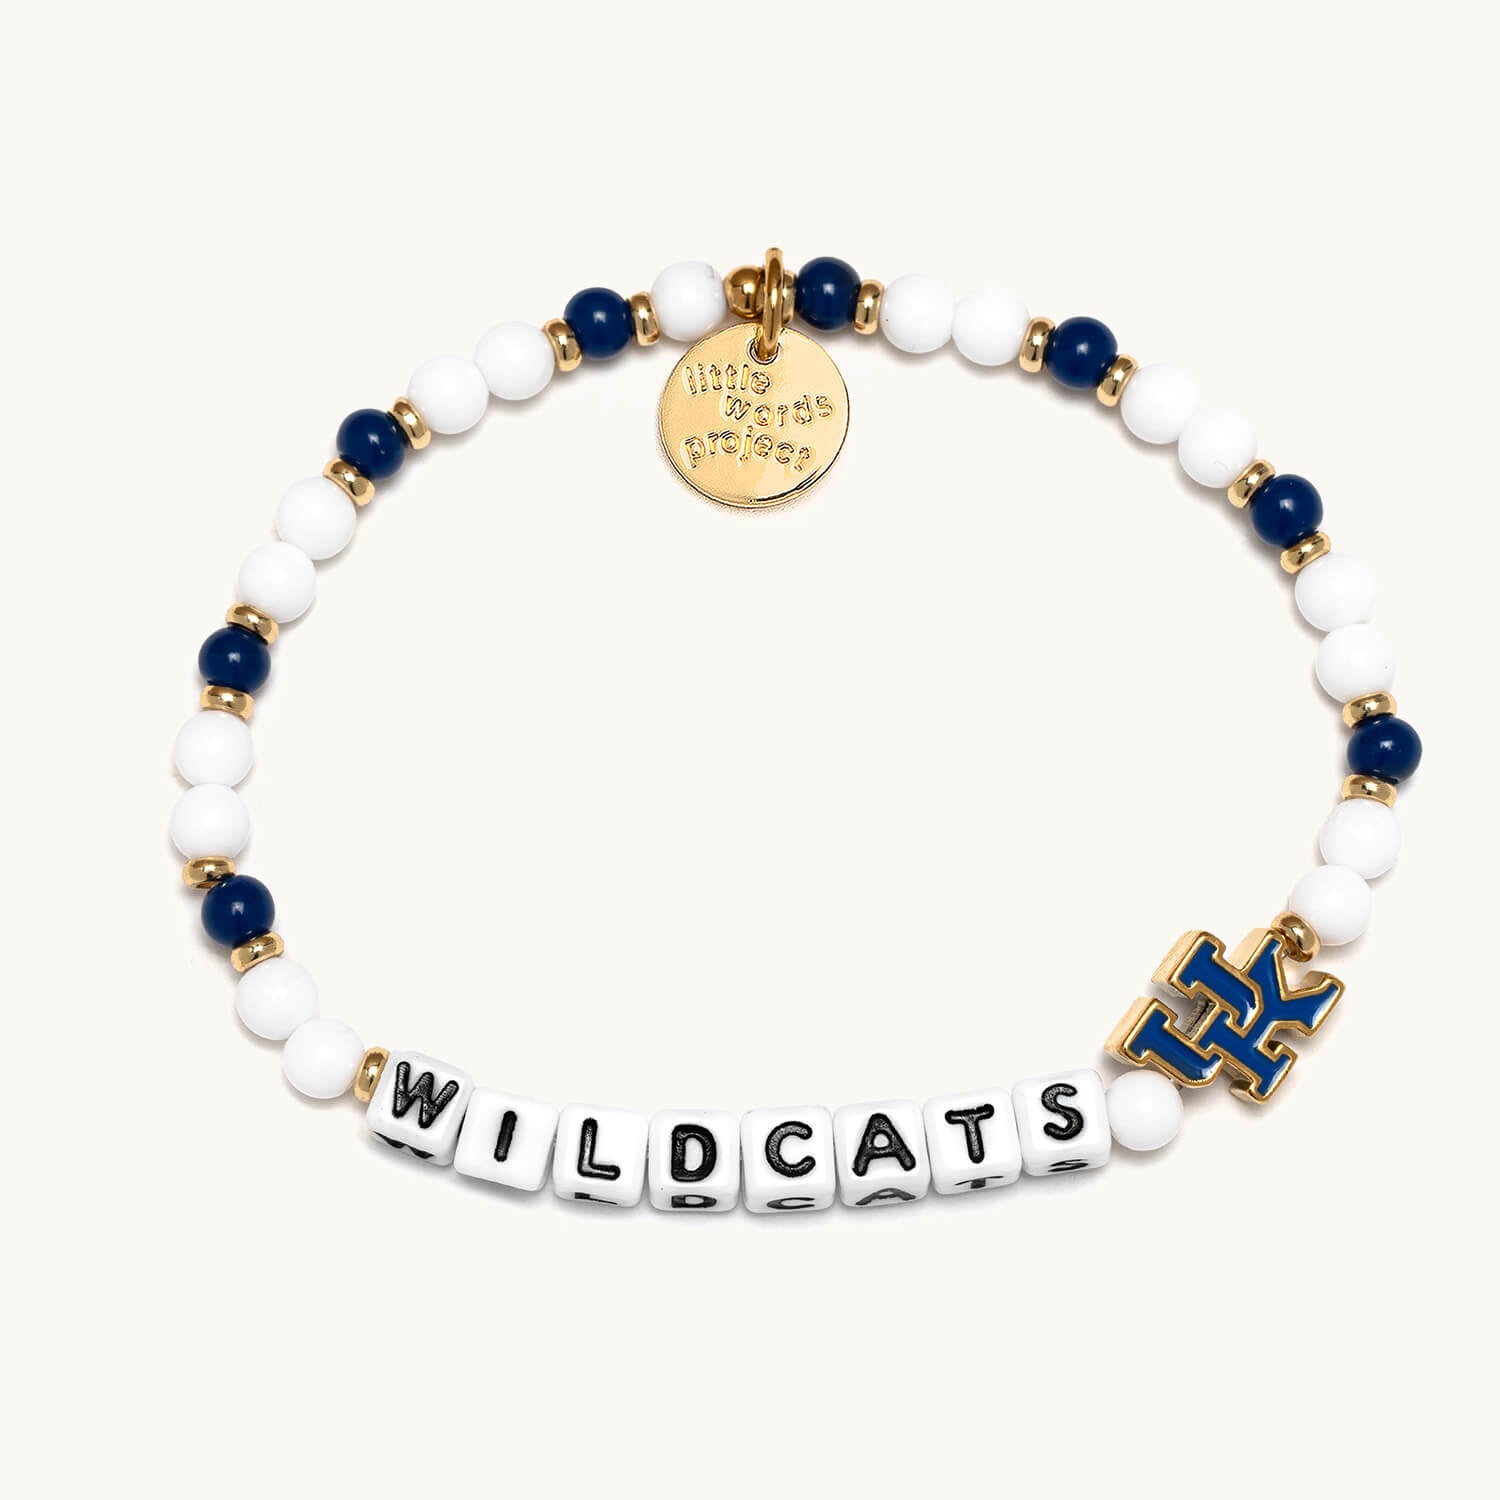 Wildcats® - University of Kentucky® Bracelet